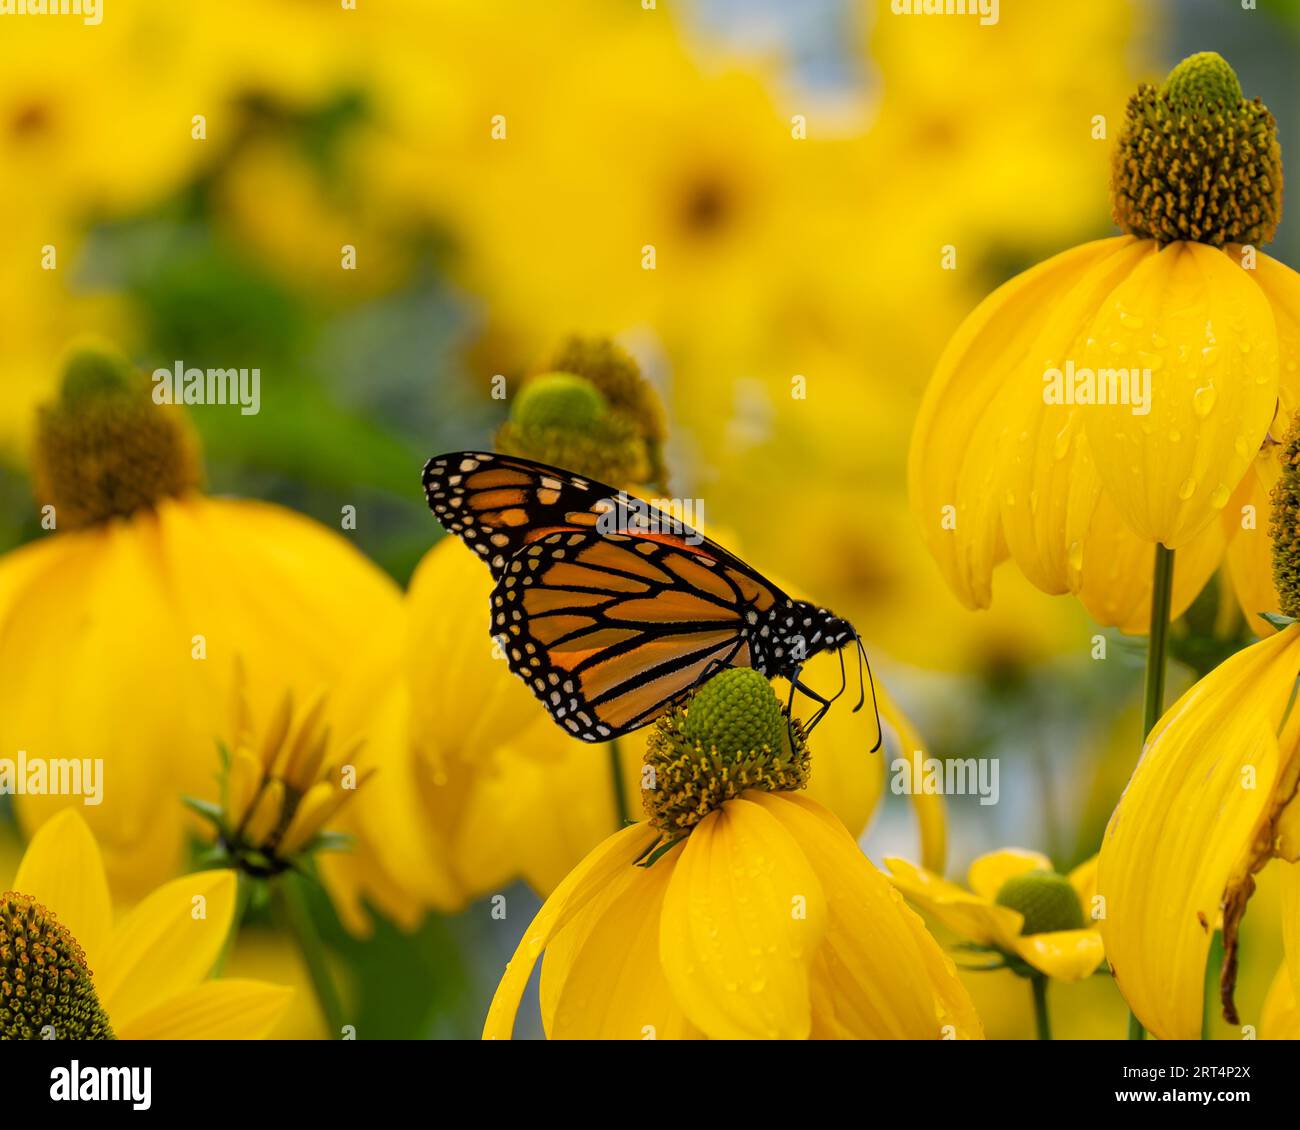 Ein Monarch-Schmetterling, Danaus plexippus, ernährt sich von und bestäubt Schnittblattblumen, Rudbeckia laciniata-Blüten in einem Garten. Stockfoto